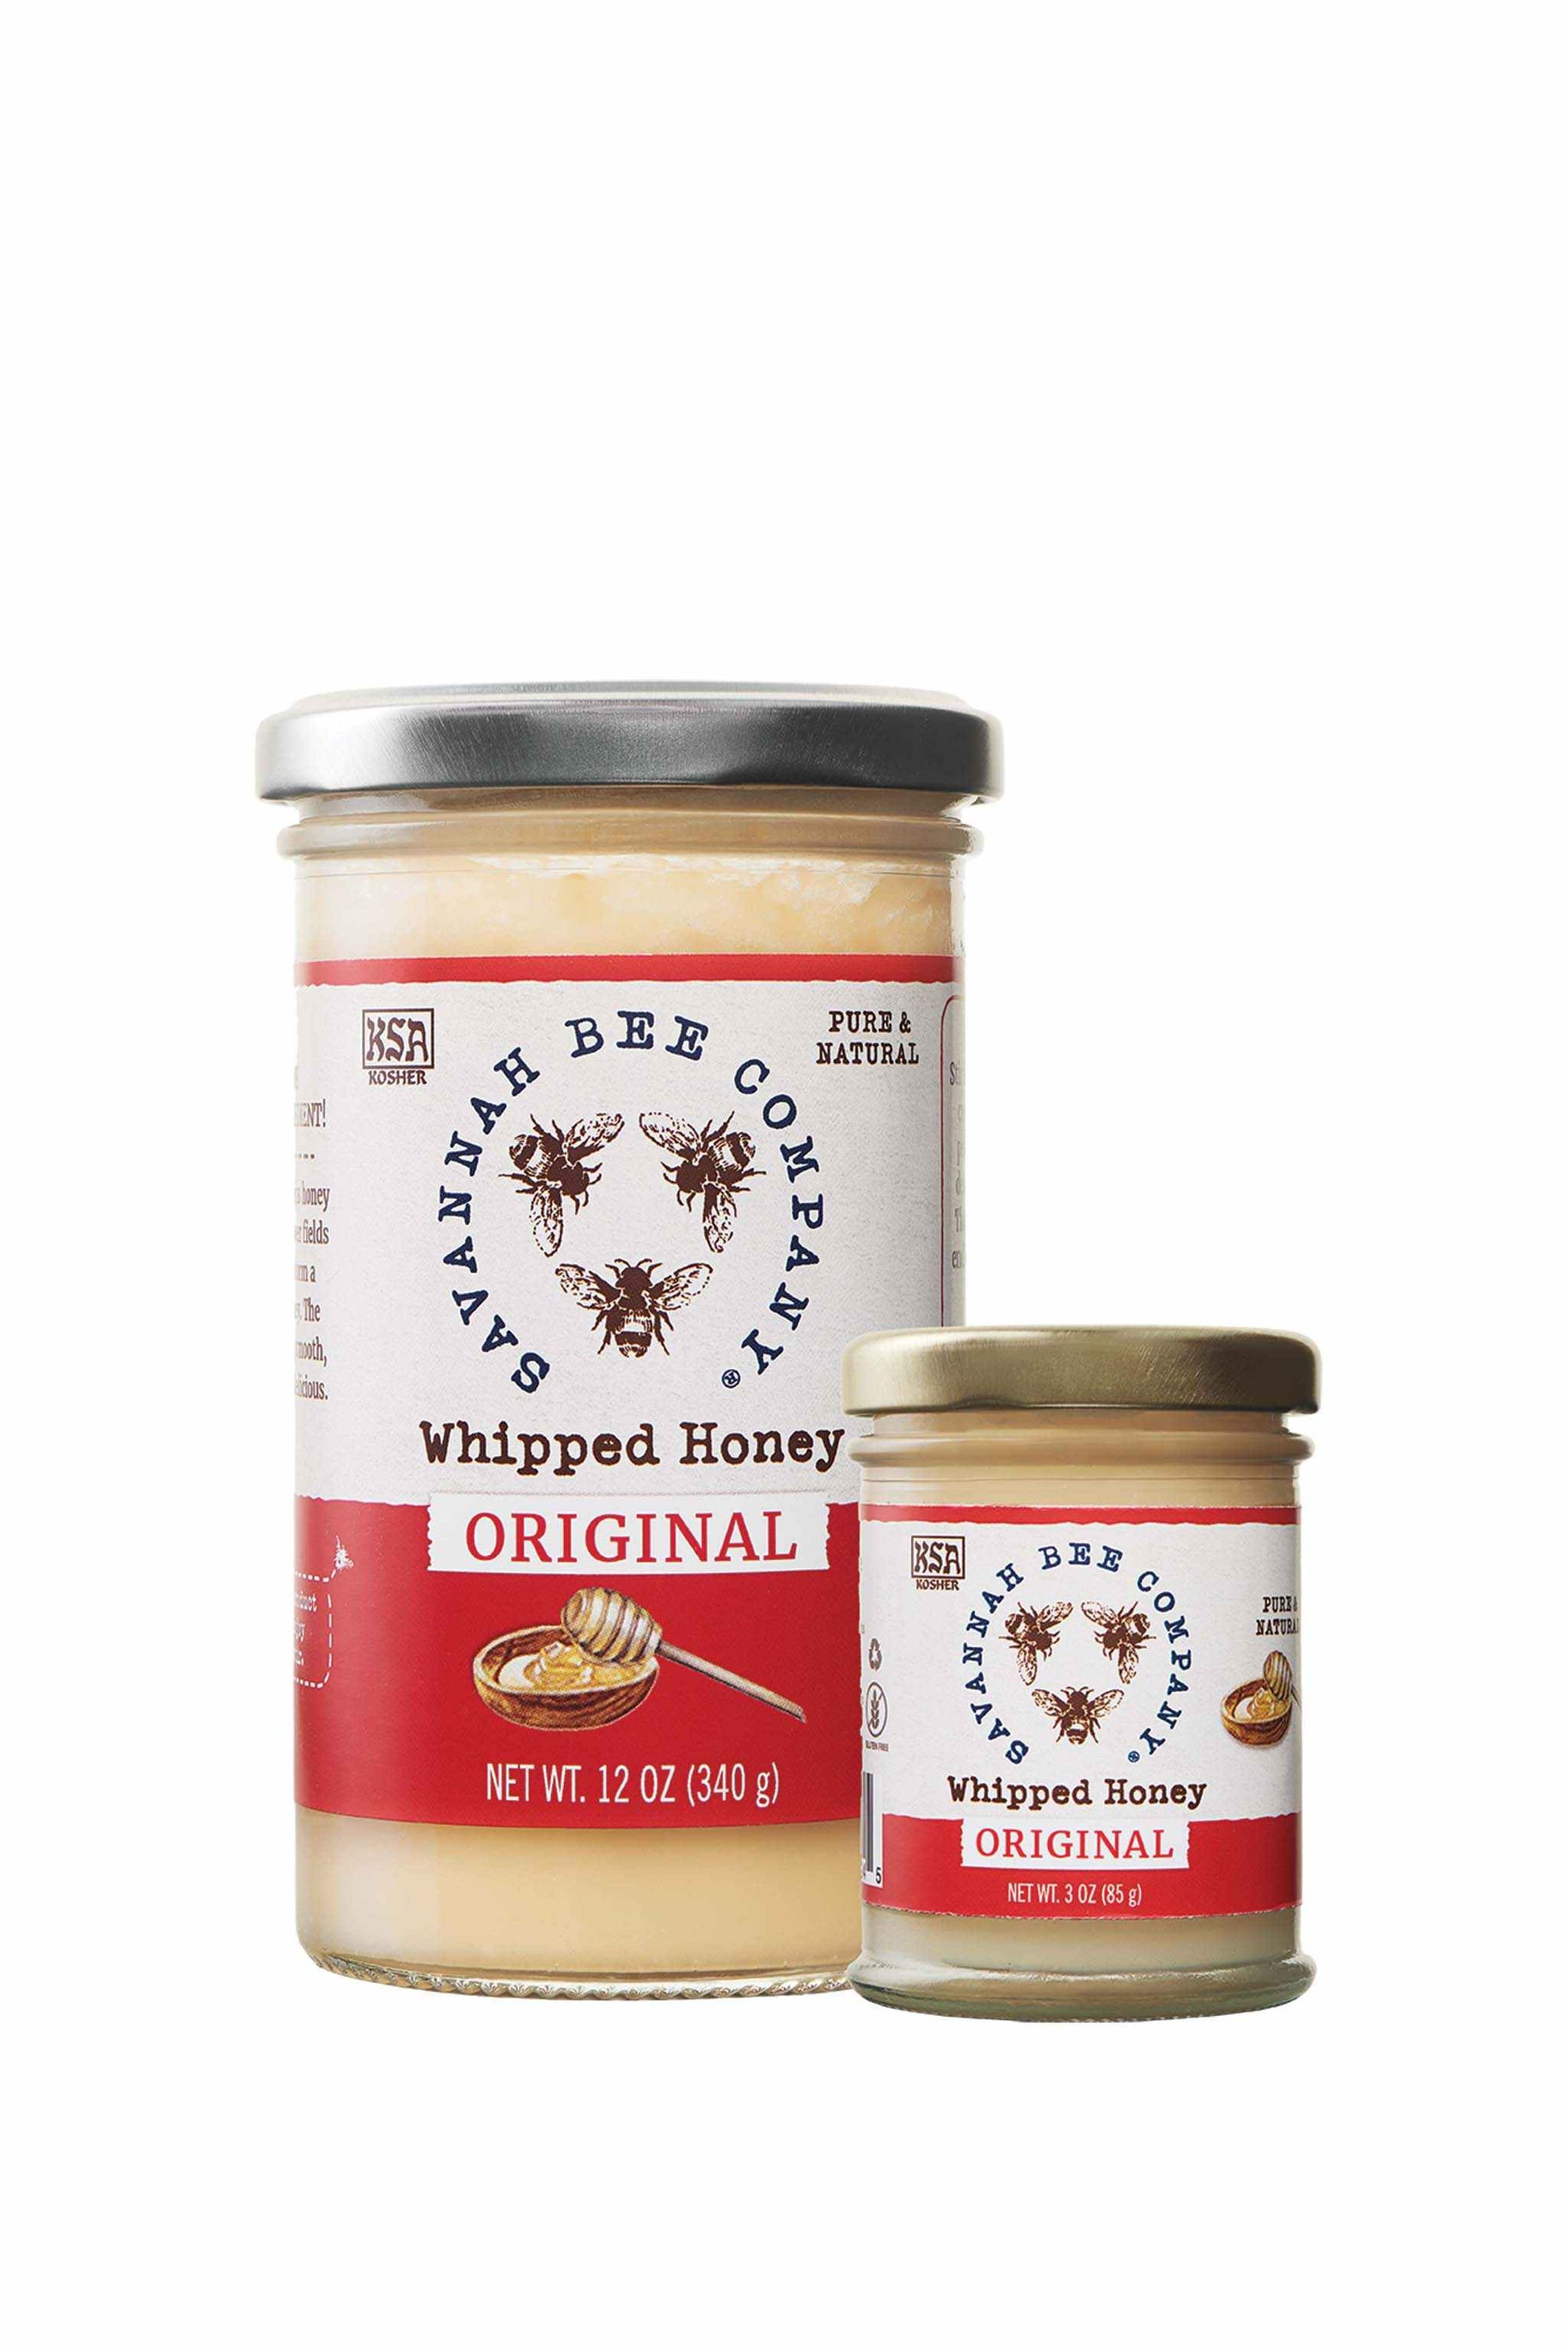 Whipped Honey Original 12 oz. and 3 oz.